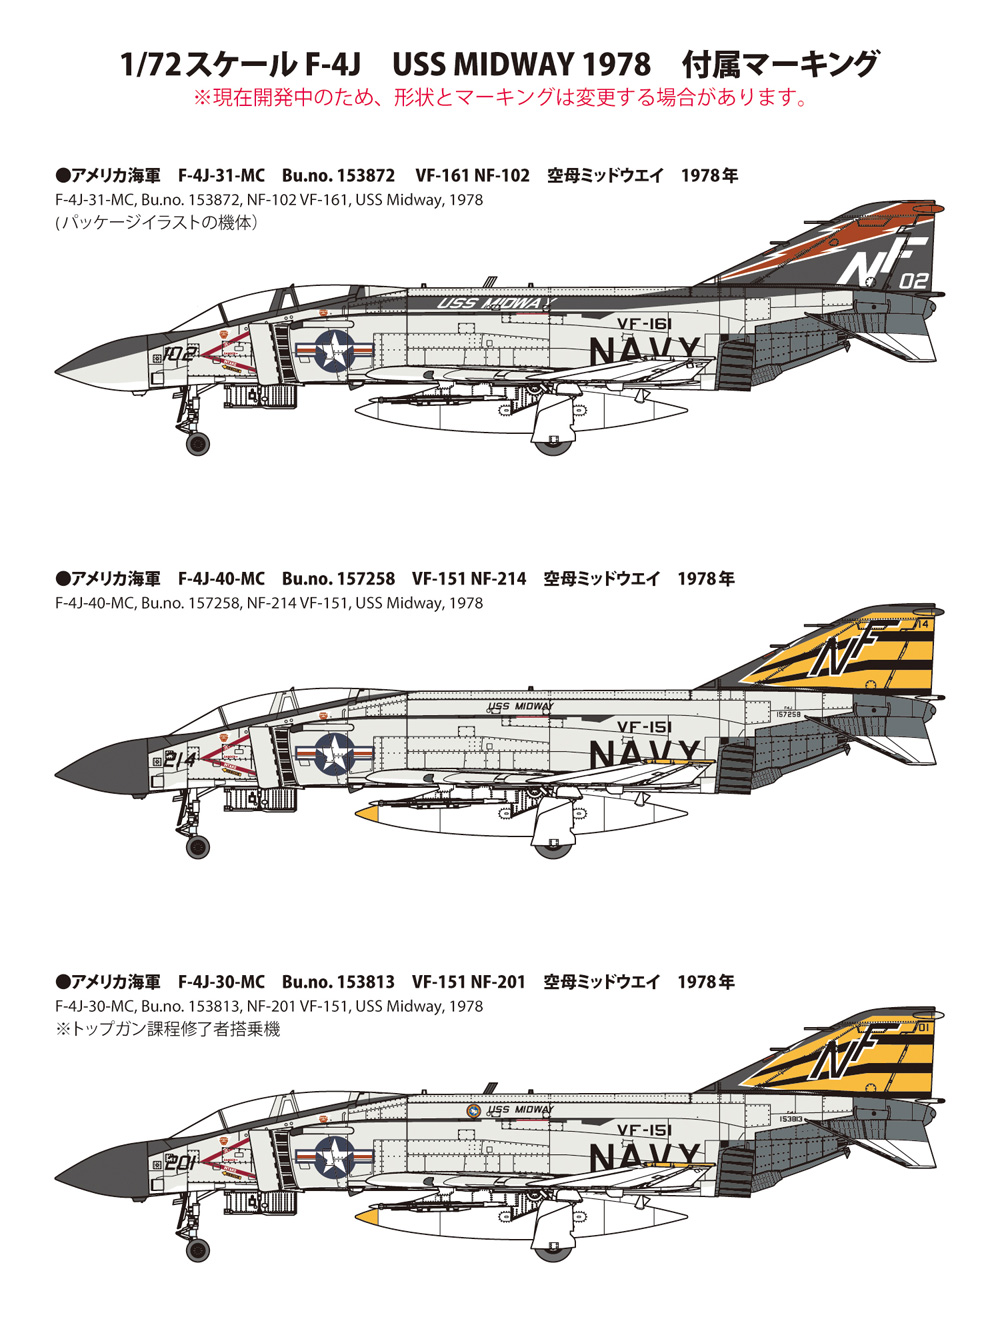 アメリカ海軍 F-4J 戦闘機 ミッドウェイ 1978 プラモデル (ファインモールド 1/72 航空機 限定品 No.72743) 商品画像_1